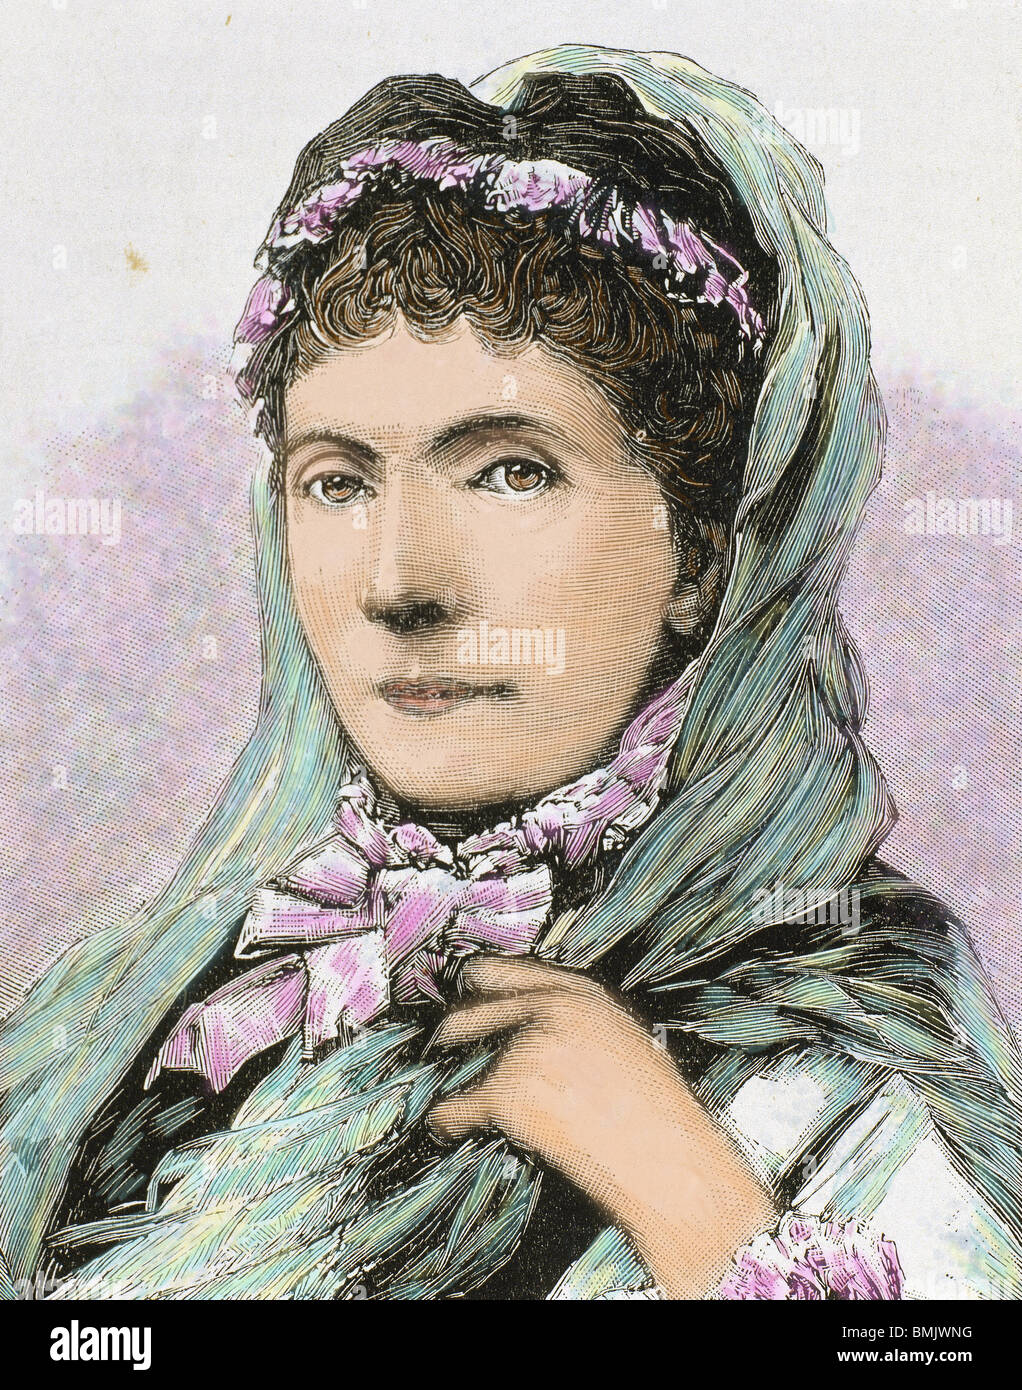 Augusta di Sassonia-weimar-Eisenach (1811-1890). Regina di Prussia e il primo tedesco imperatrice come la consorte di Guglielmo I. Foto Stock